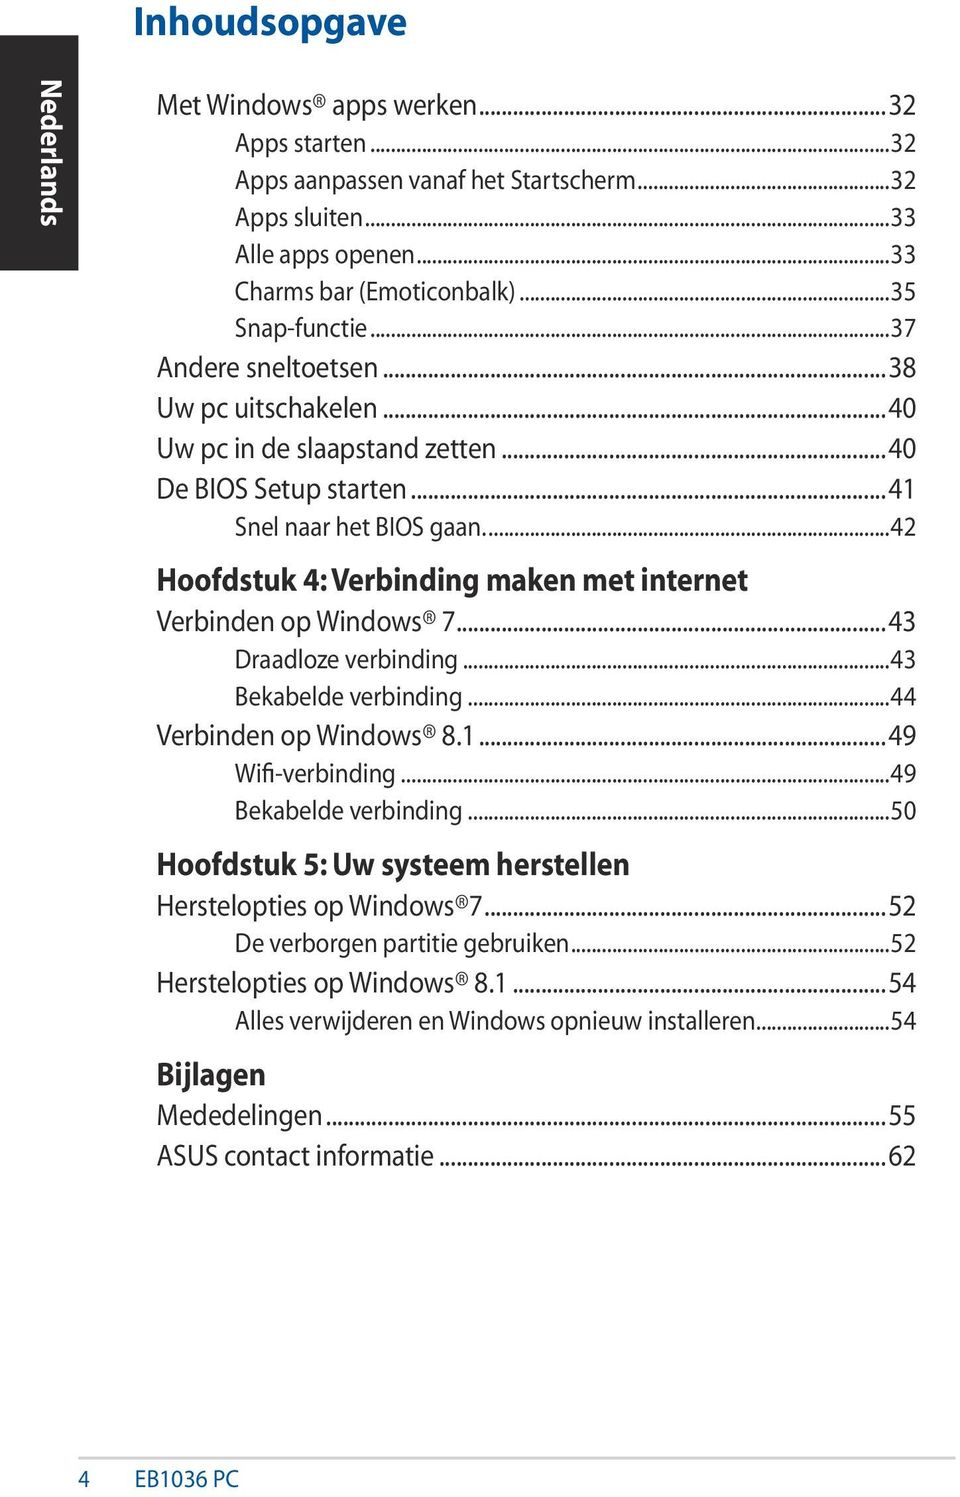 ..42 Hoofdstuk 4: Verbinding maken met internet Verbinden op Windows 7...43 Draadloze verbinding...43 Bekabelde verbinding...44 Verbinden op Windows 8.1...49 Wifi-verbinding...49 Bekabelde verbinding.